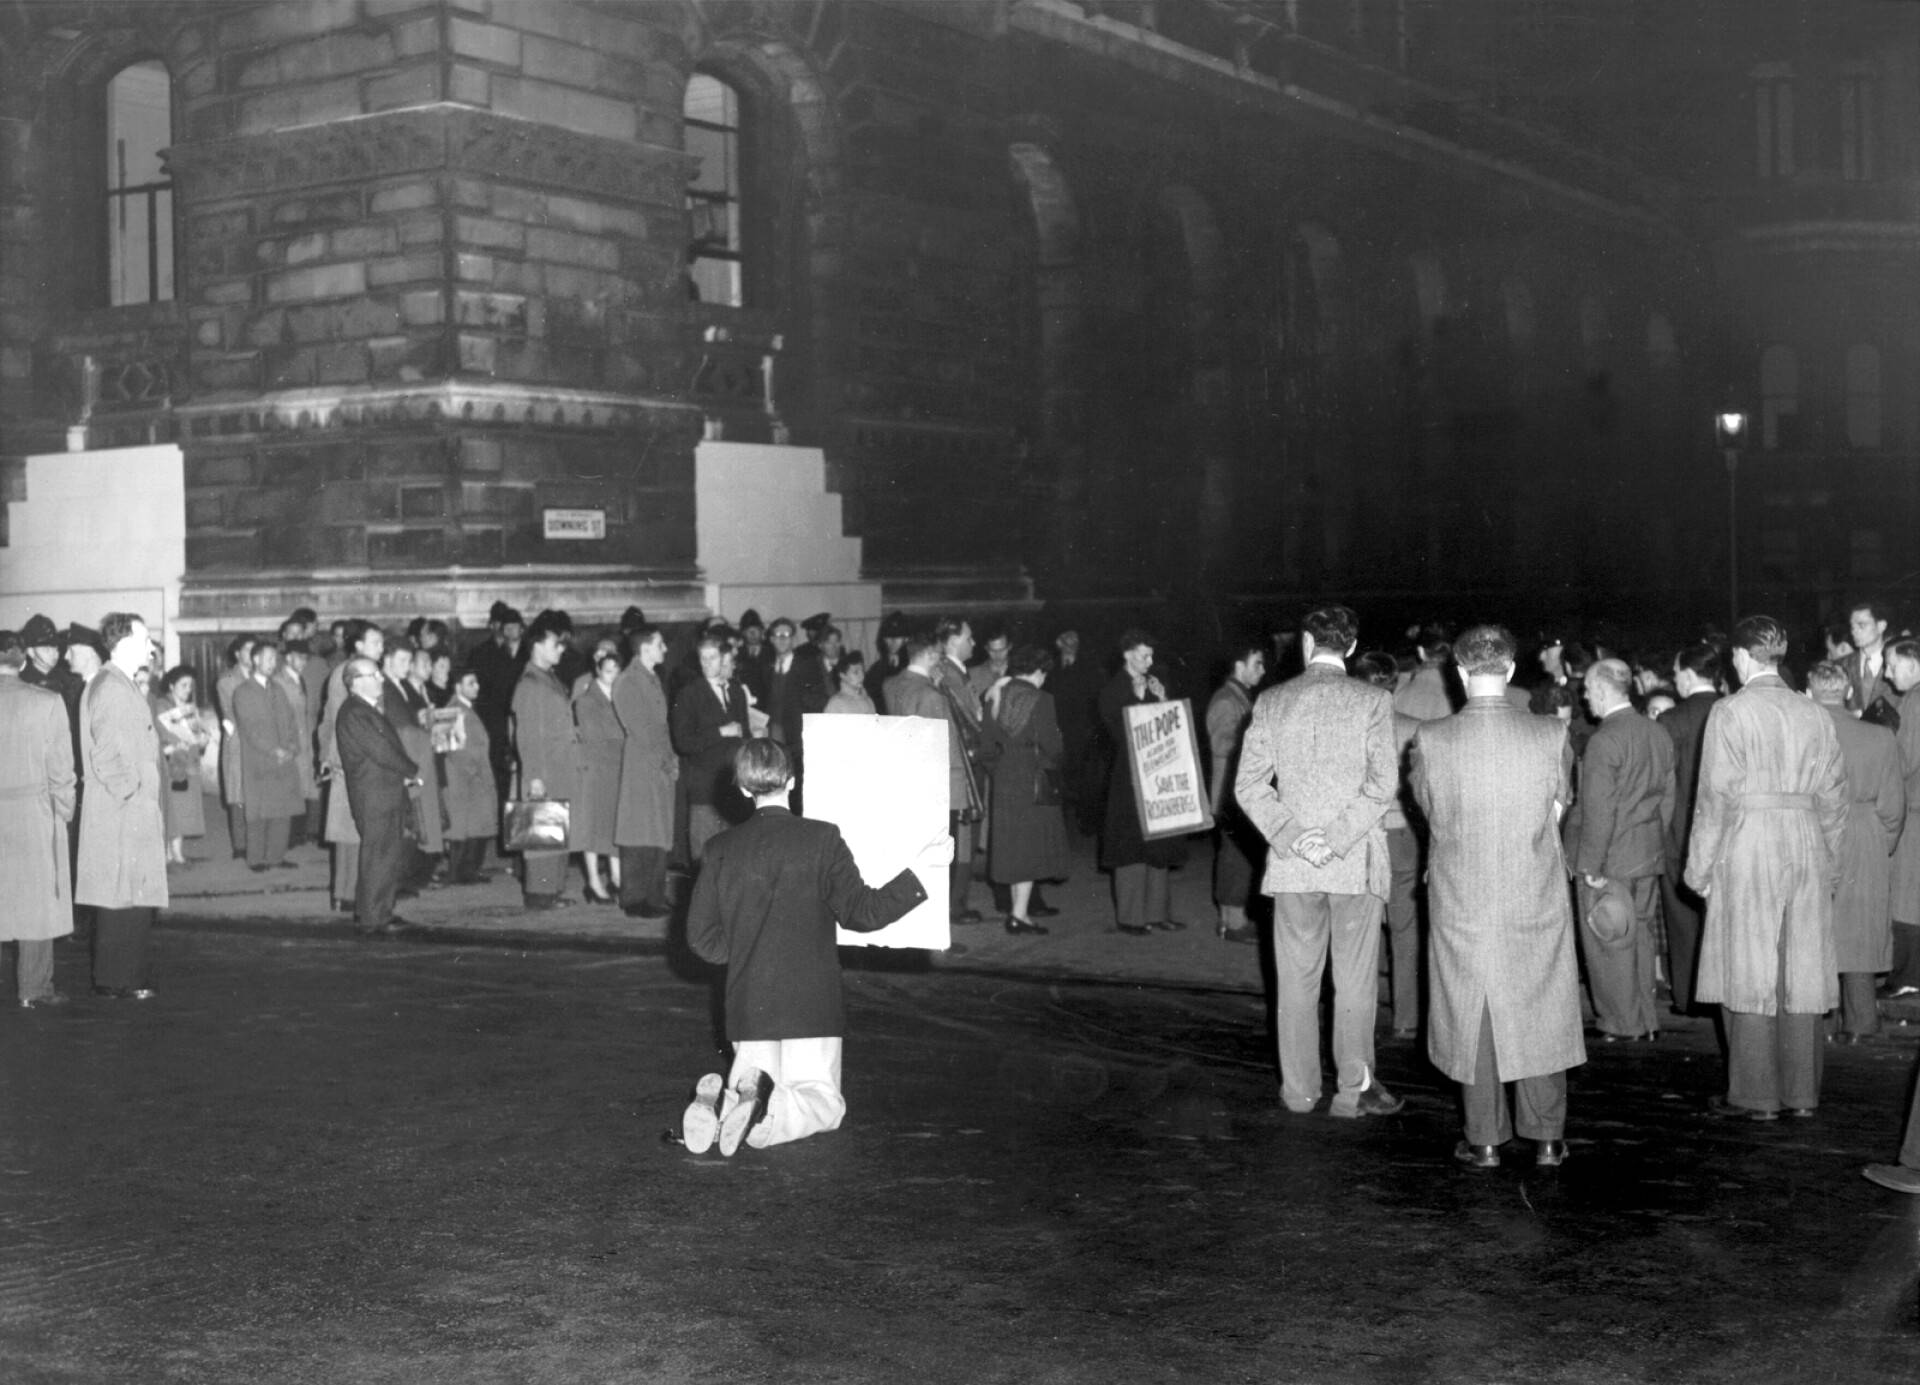 Rosenbergien teloitusta vastustaneet mielenosoitukset levisivät Eurooppaan. Kansalaiset protestoivat New Yorkin oikeuden päätöstä Englannin Downing Streetillä rukoilemalla ja pitämällä kahden minuutin hiljaisuuden. 